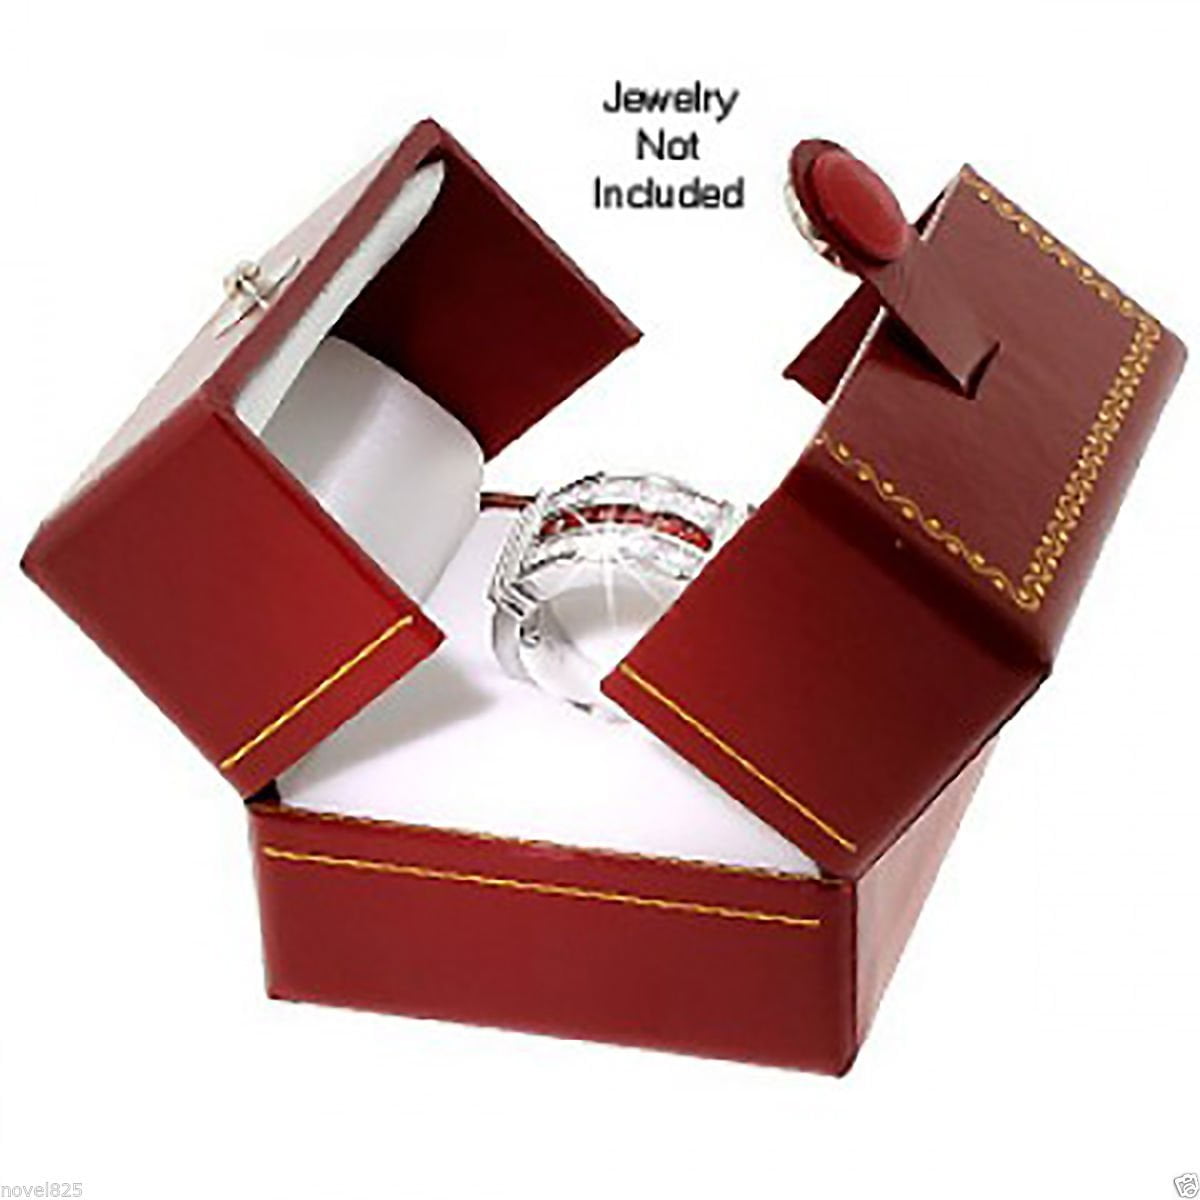 New 1-5-10-24-48-96-144 pcs Red or Black Velvet Gilt Earring Jewelry Gift Boxes 